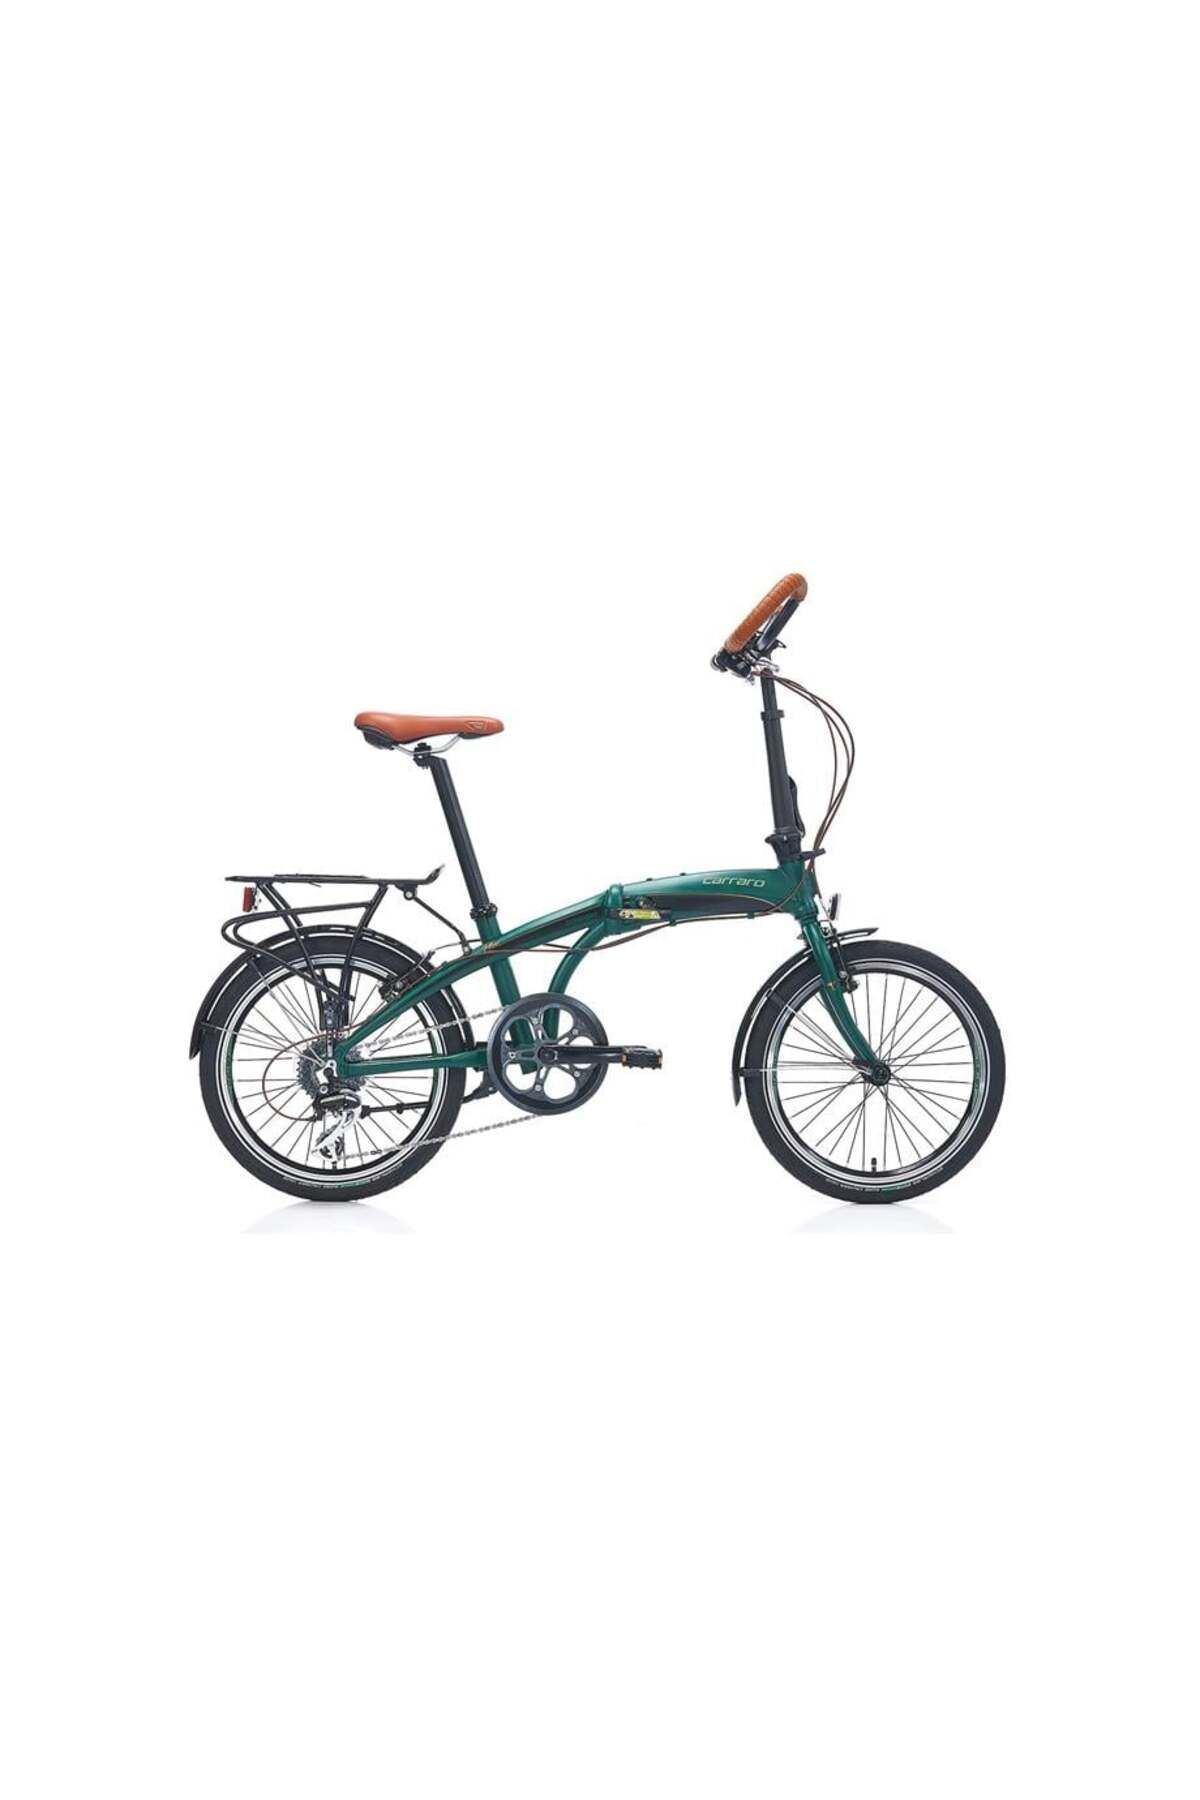 Carraro Flexı Comfort Katlanır Bisiklet 320h V 20 Jant 8 Vites Mat Koyu Yeşil Parlak Siyah Bakır Yeş